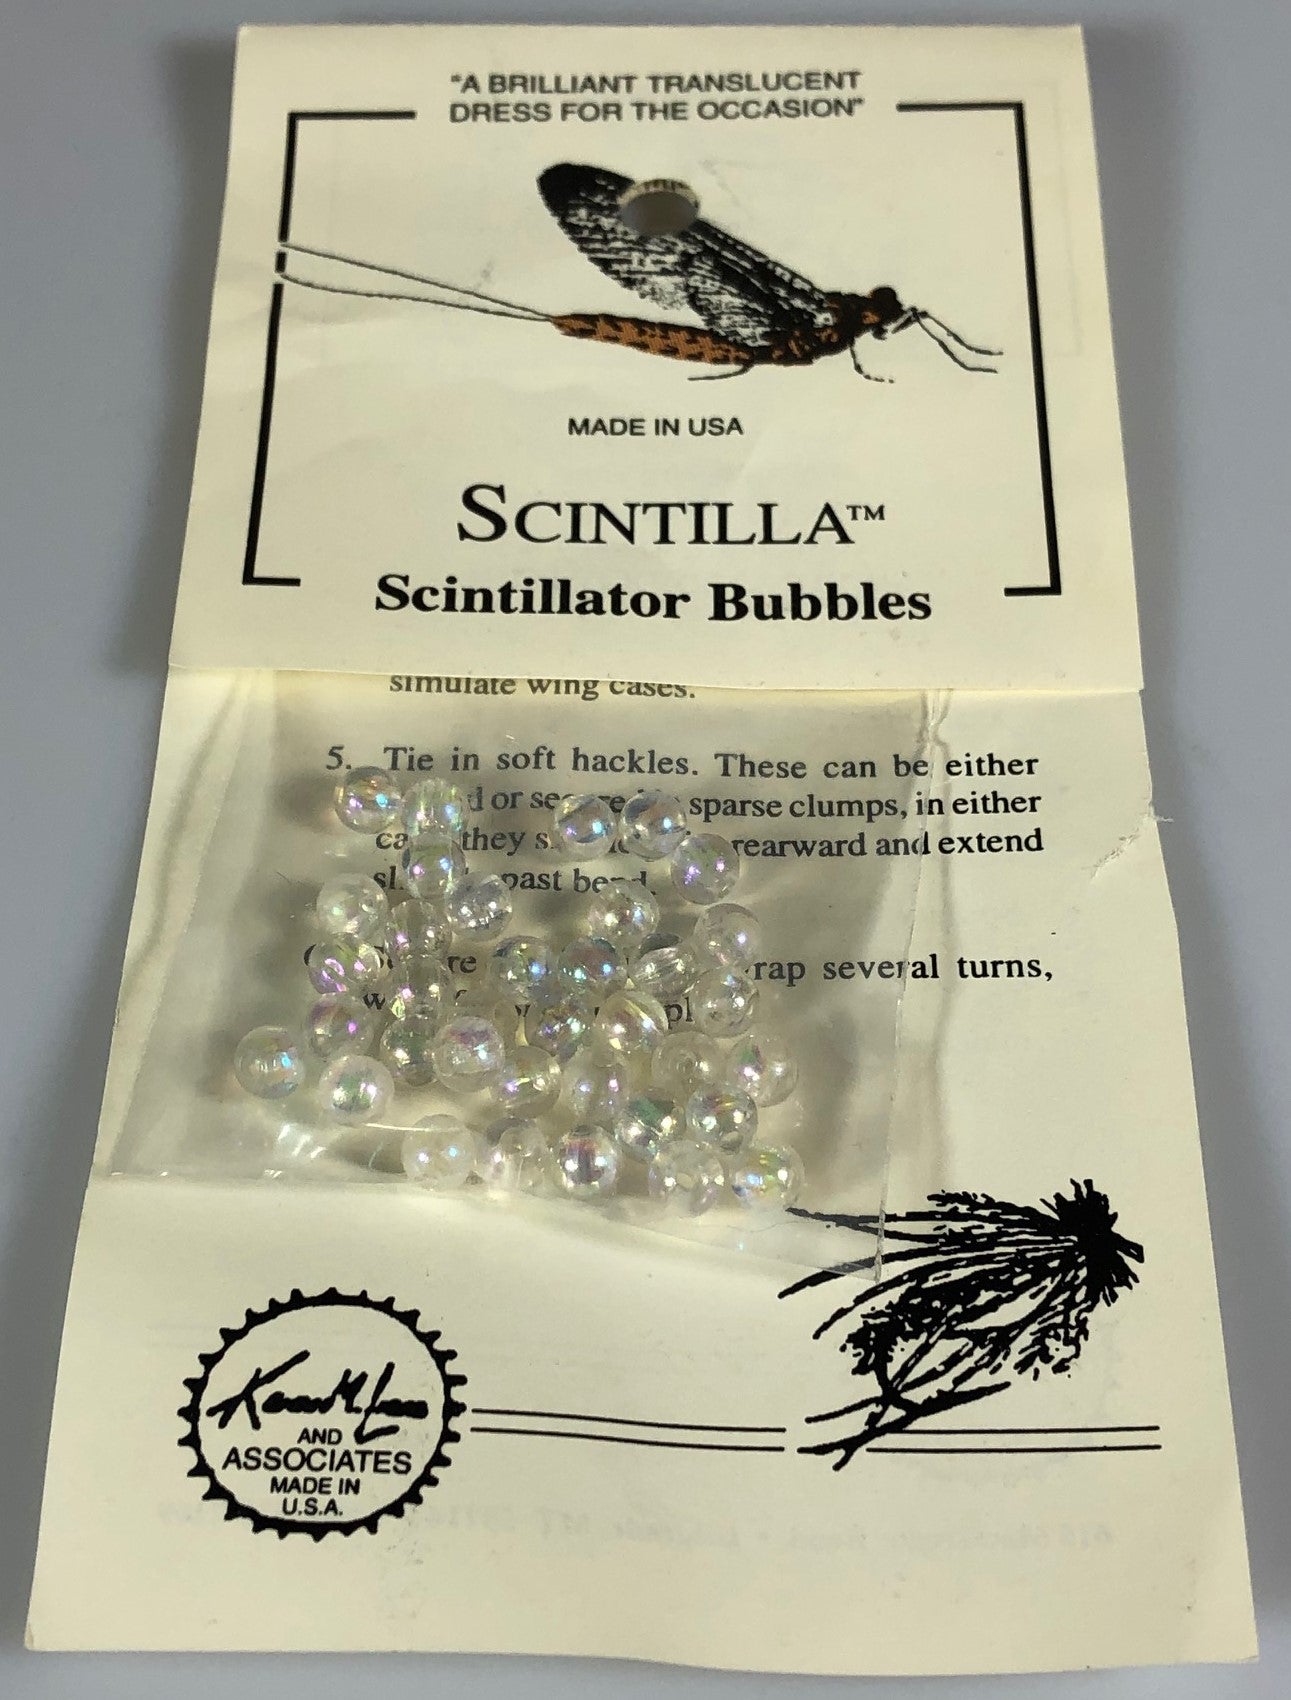 Scintillator Bubbles